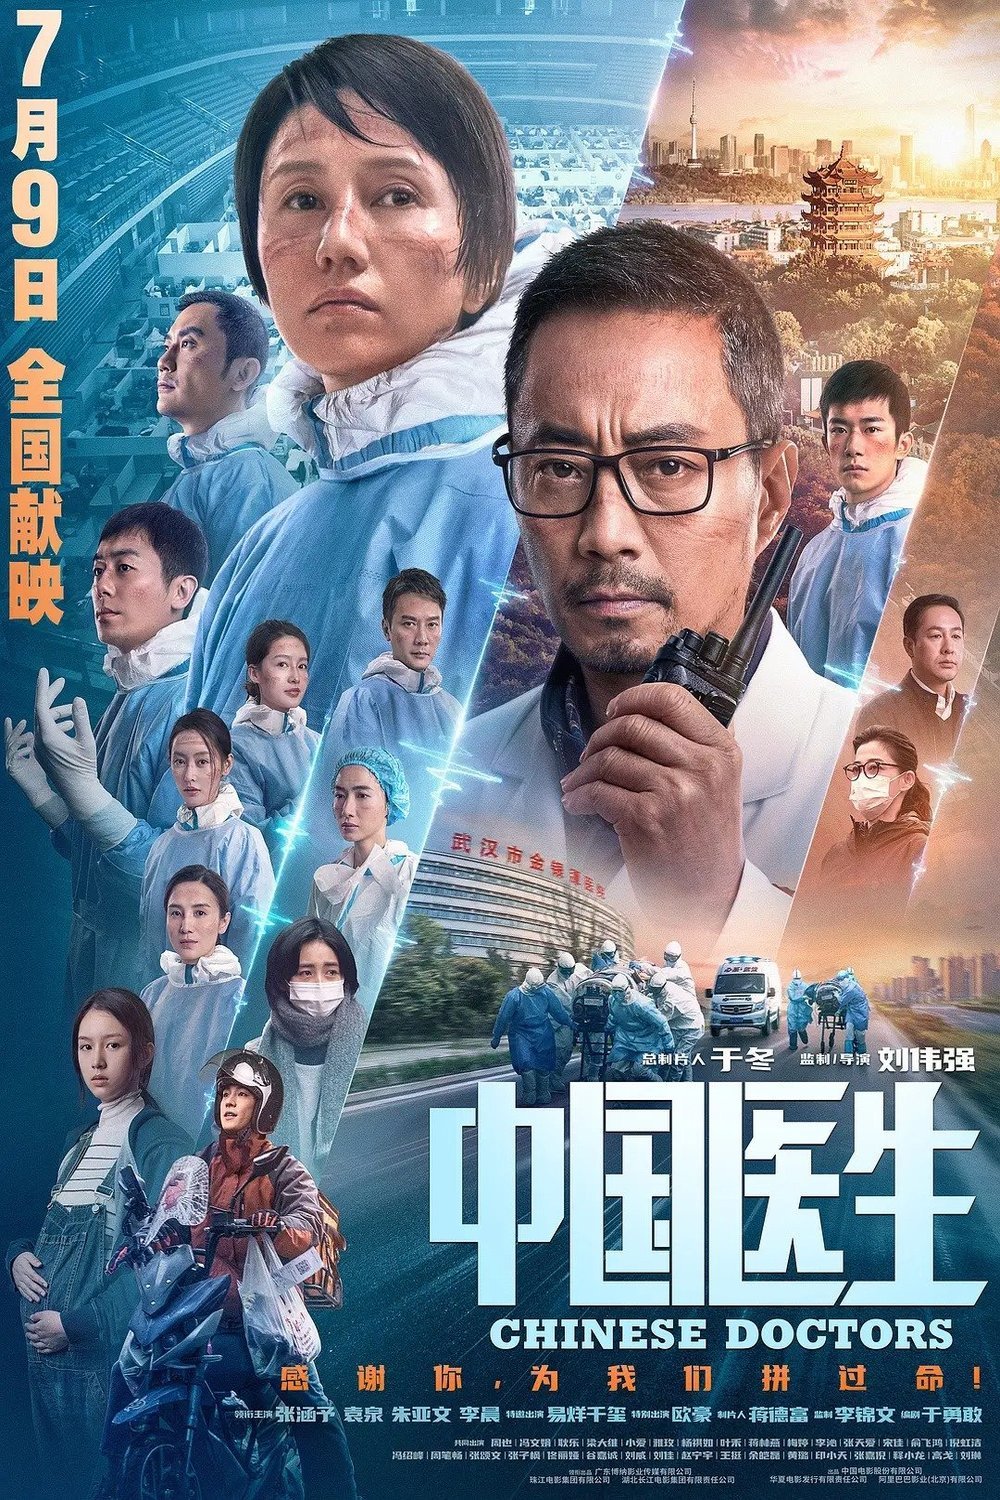 L'affiche originale du film Zhong guo yi sheng en Chinois